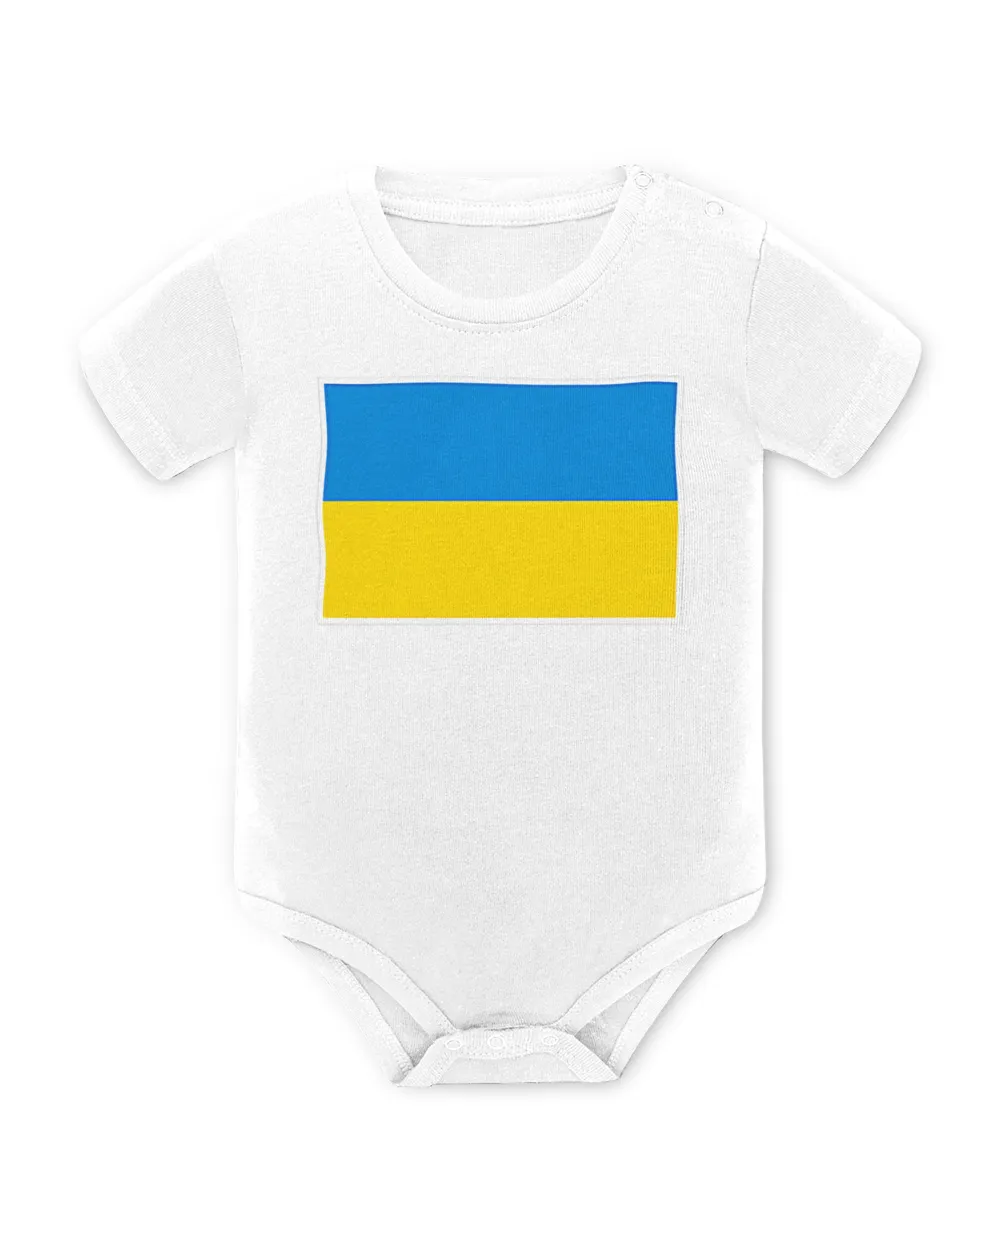 Ukraine Flag with vintage Ukrainian national colors T-Shirt